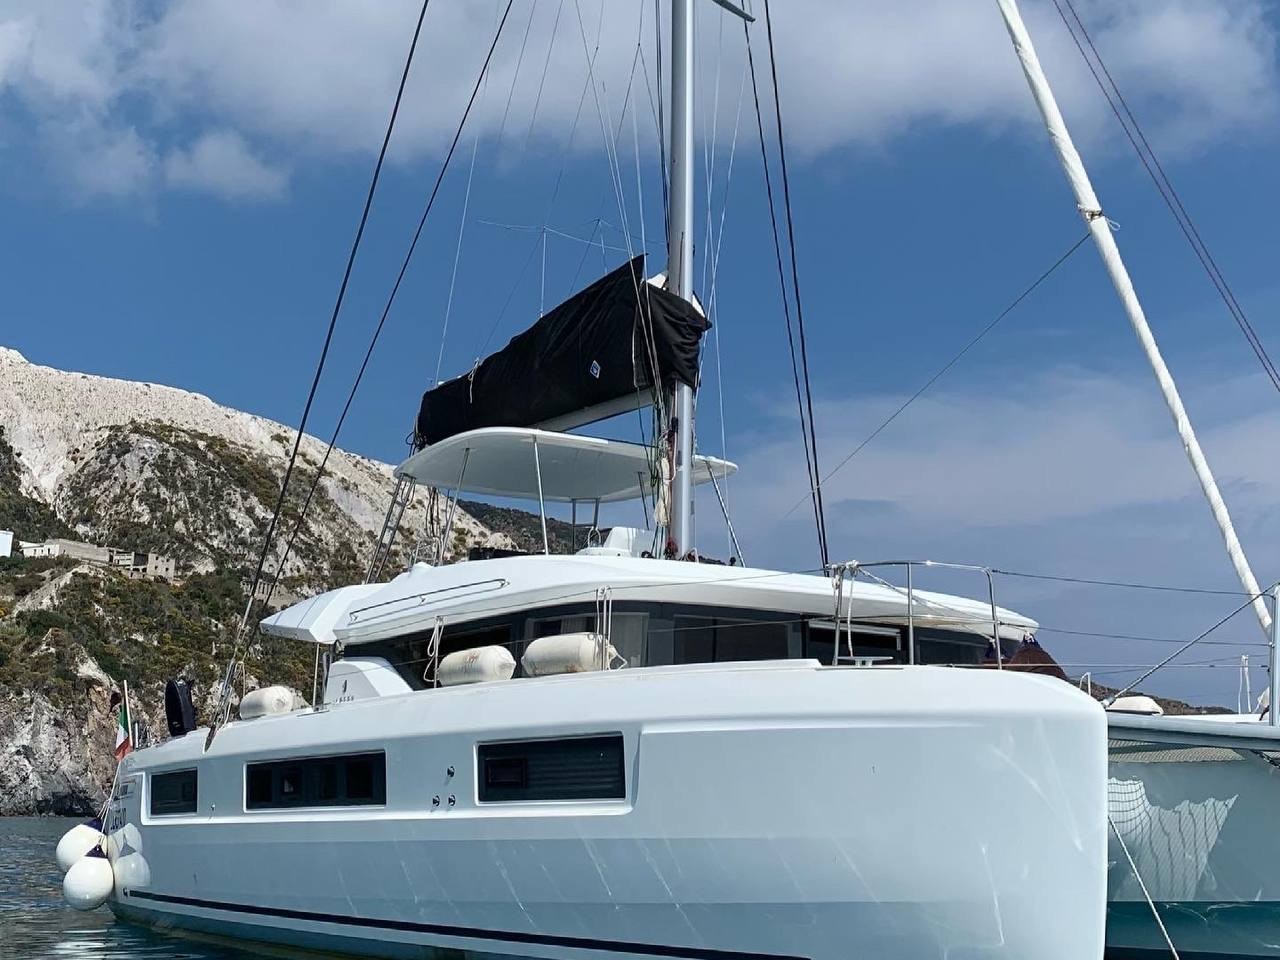 Lagoon 50 - Luxury yacht charter Sicily & Boat hire in Italy Sicily Aeolian Islands Capo d'Orlando Capo d'Orlando Marina 2